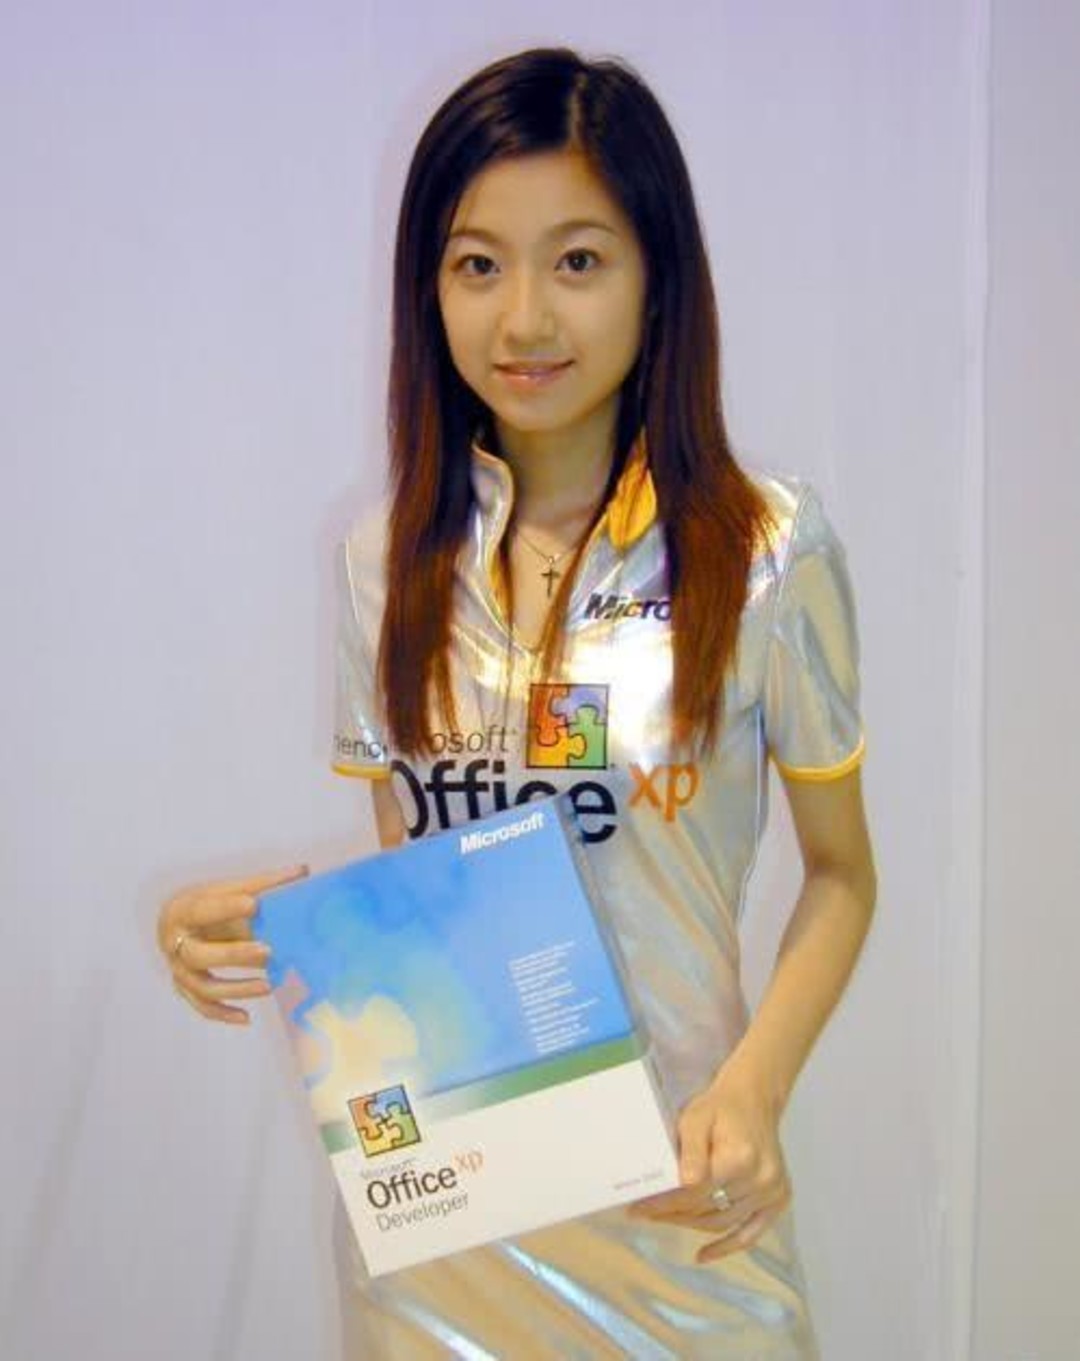 陈自瑶 曾经是“微软第一美女”